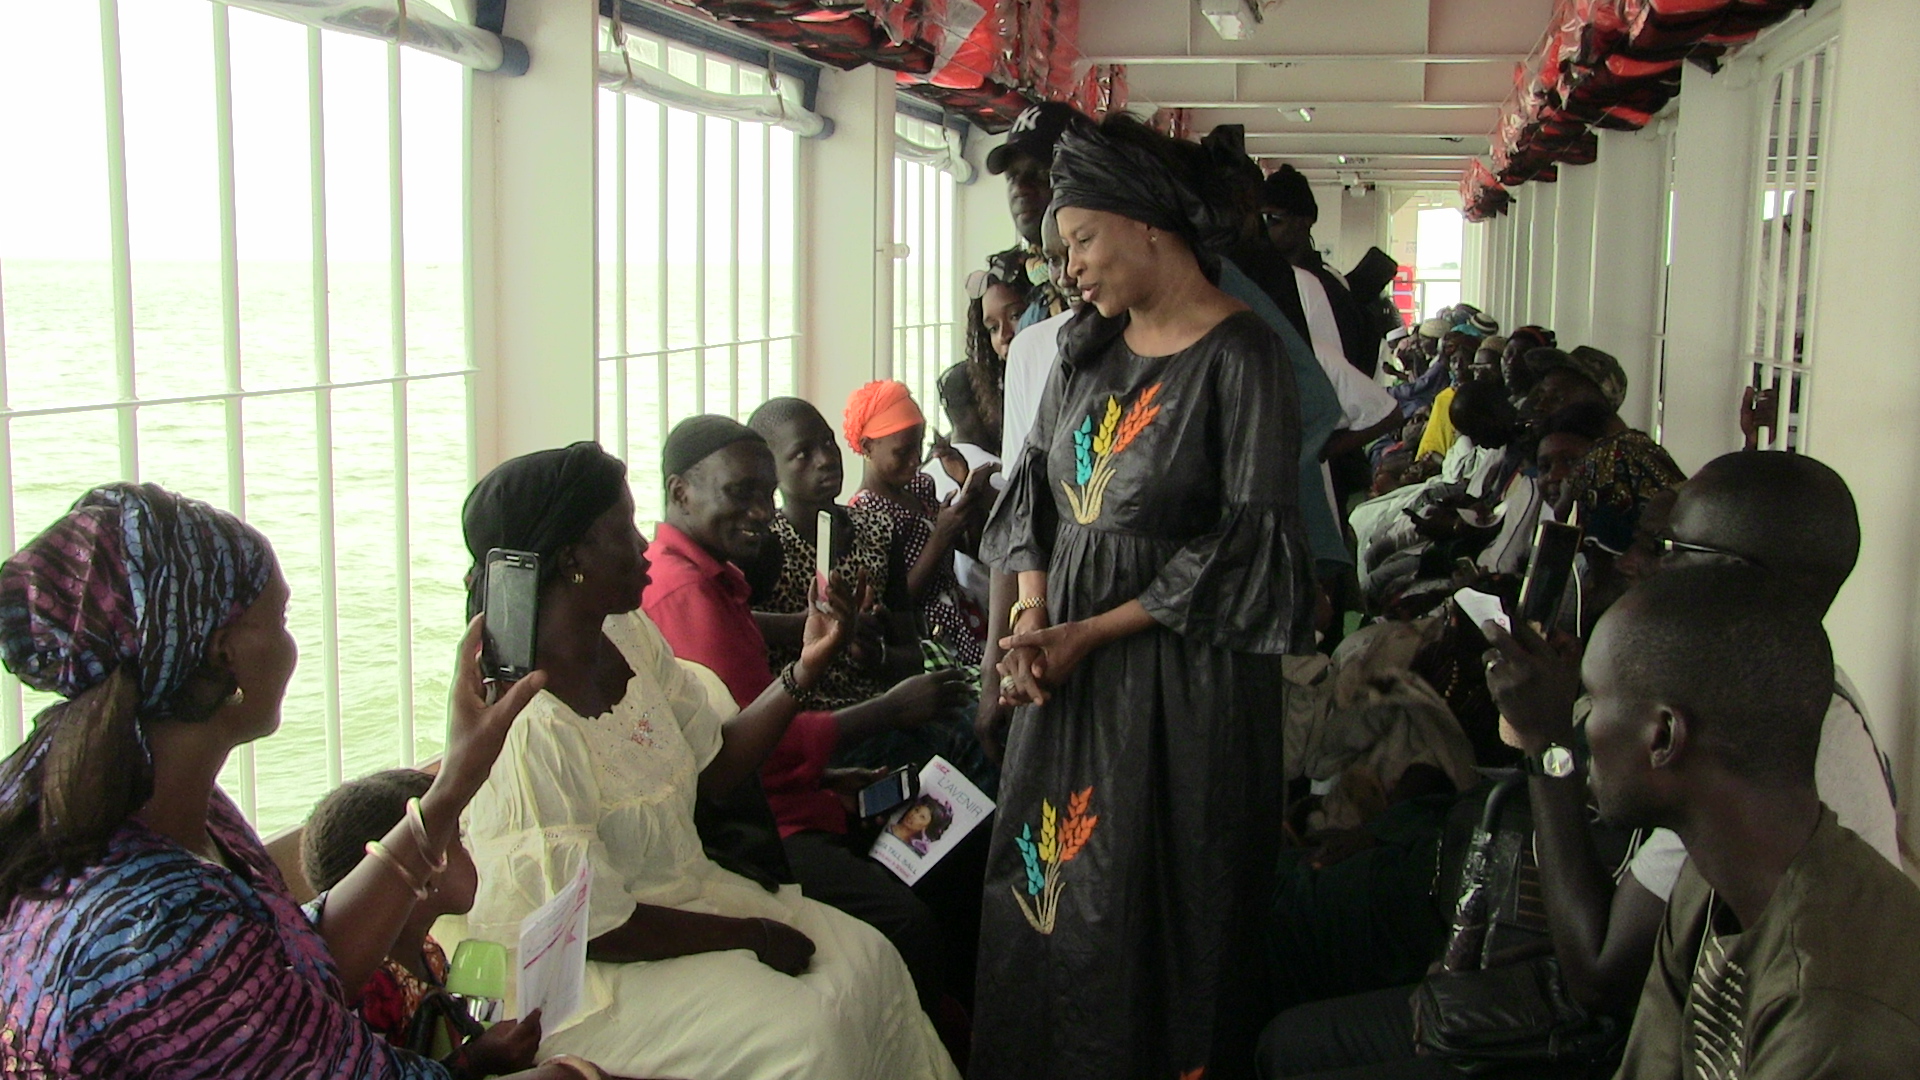 Arrêt sur image: Avant la traversée du ferry gambien, Me Aissata Tall Sall a salué la présence de la MICEGA, les soldats de la CEDEAO, en Gambie